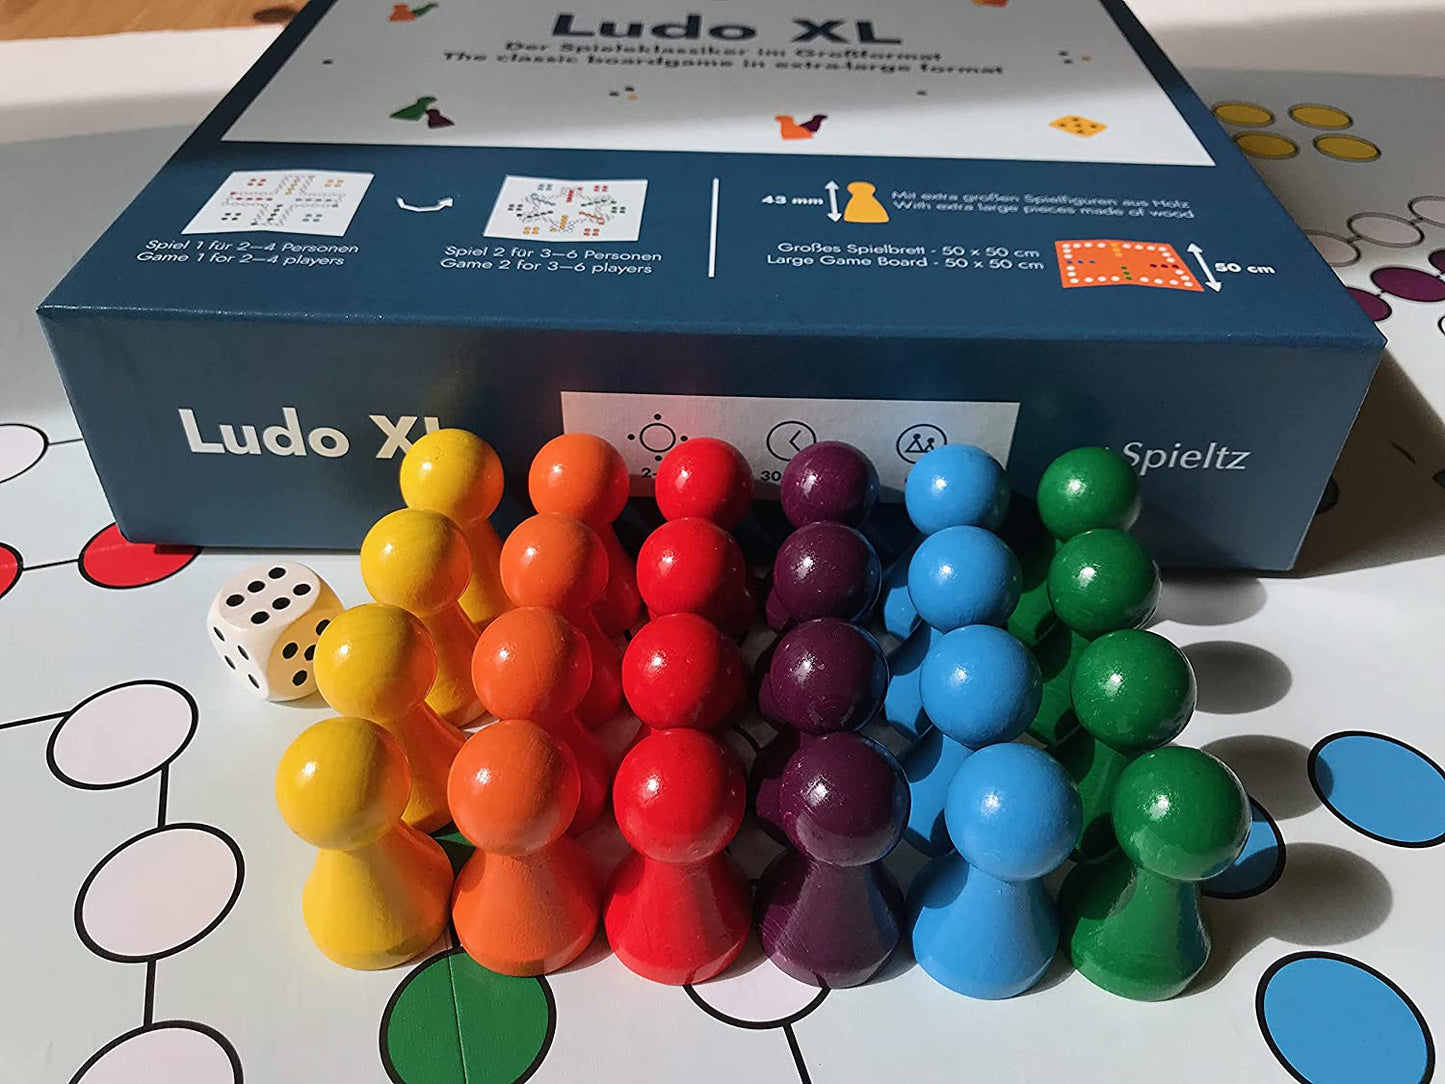 Spieltz Ludo XL Spiel für 2 - 6 Personen (Vorderseite bis 4, Rückseite bis 6 Spieler)